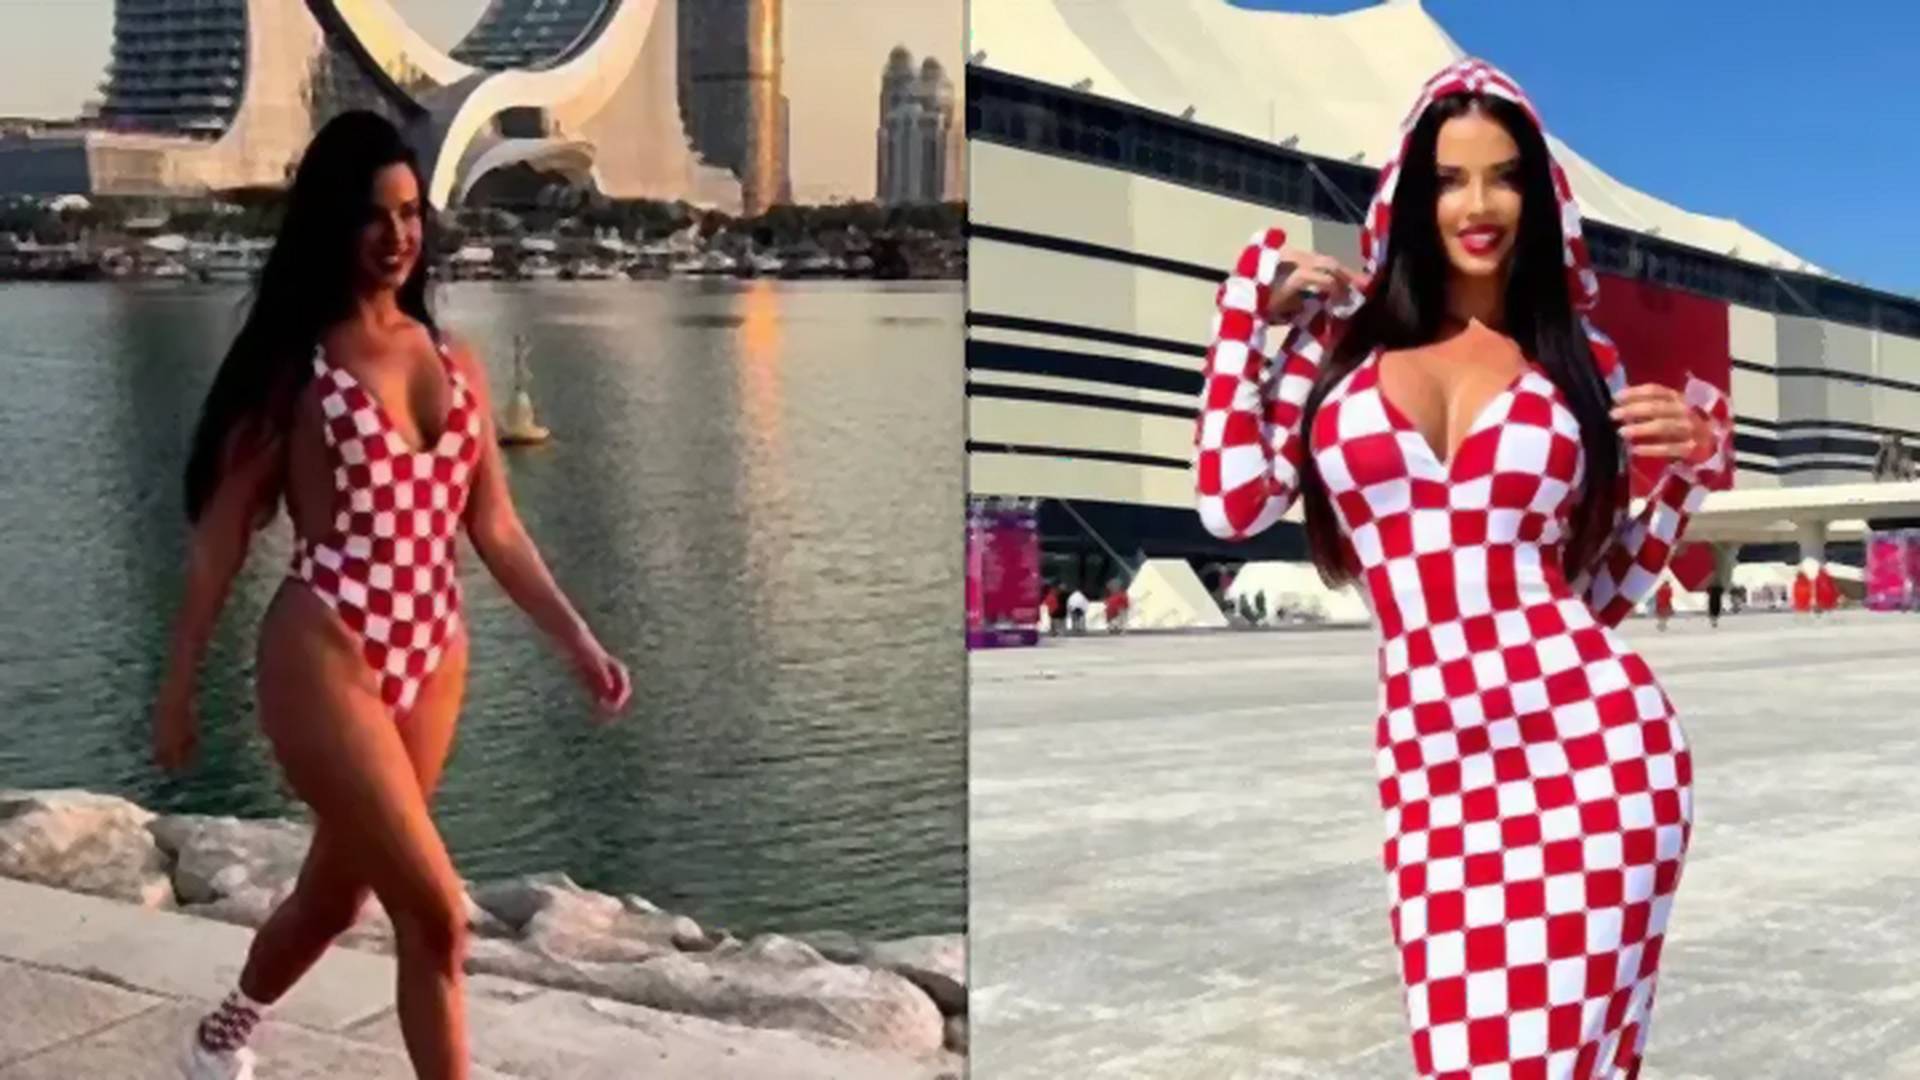 Merész öltözete miatt letartóztatták Katarban a korábbi Miss Horvátországot